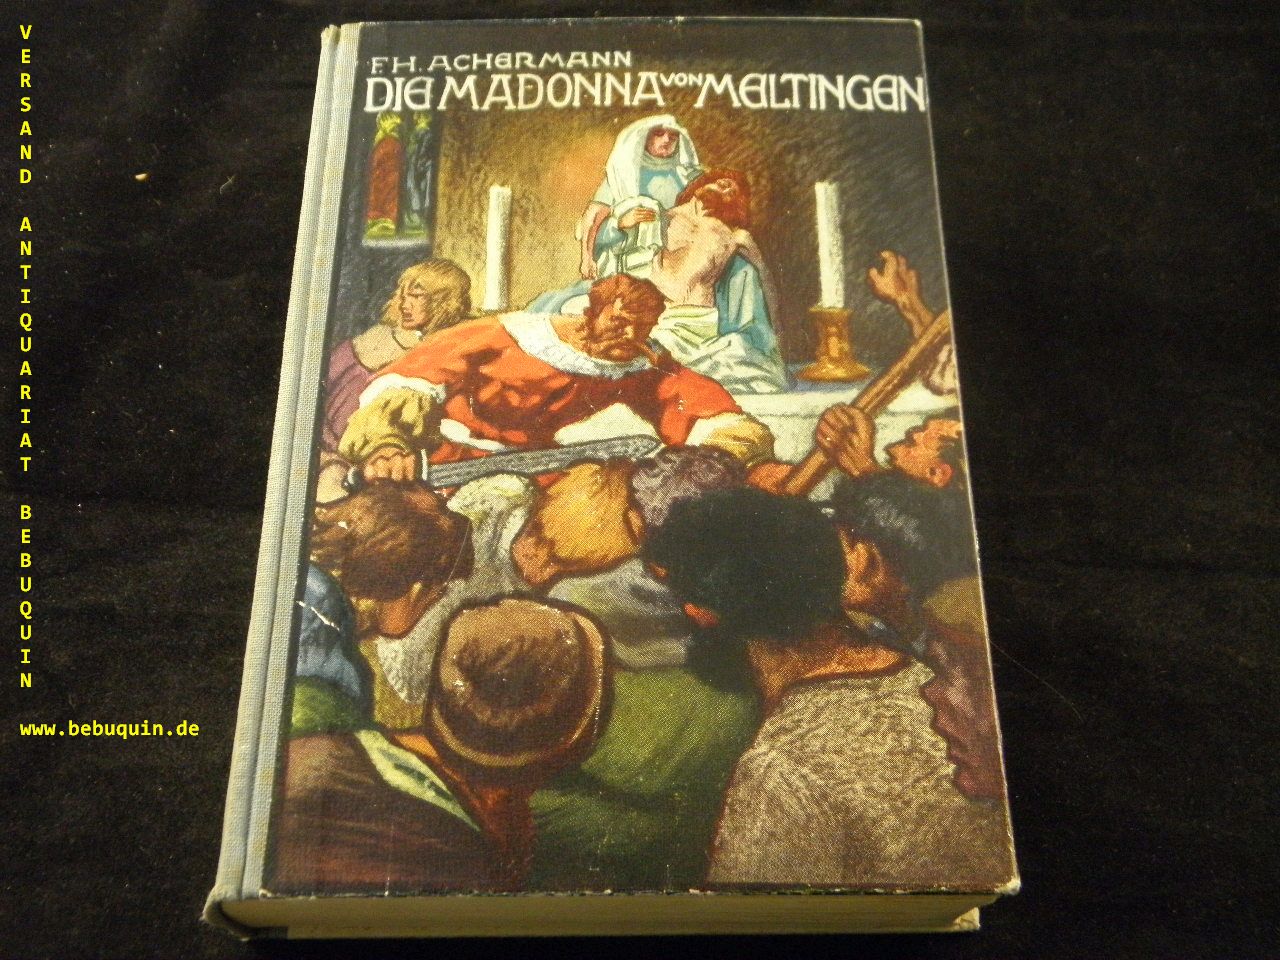 ACHERMANN, F.H.: - Die Madonna von Meltingen.  Historischer Roman.